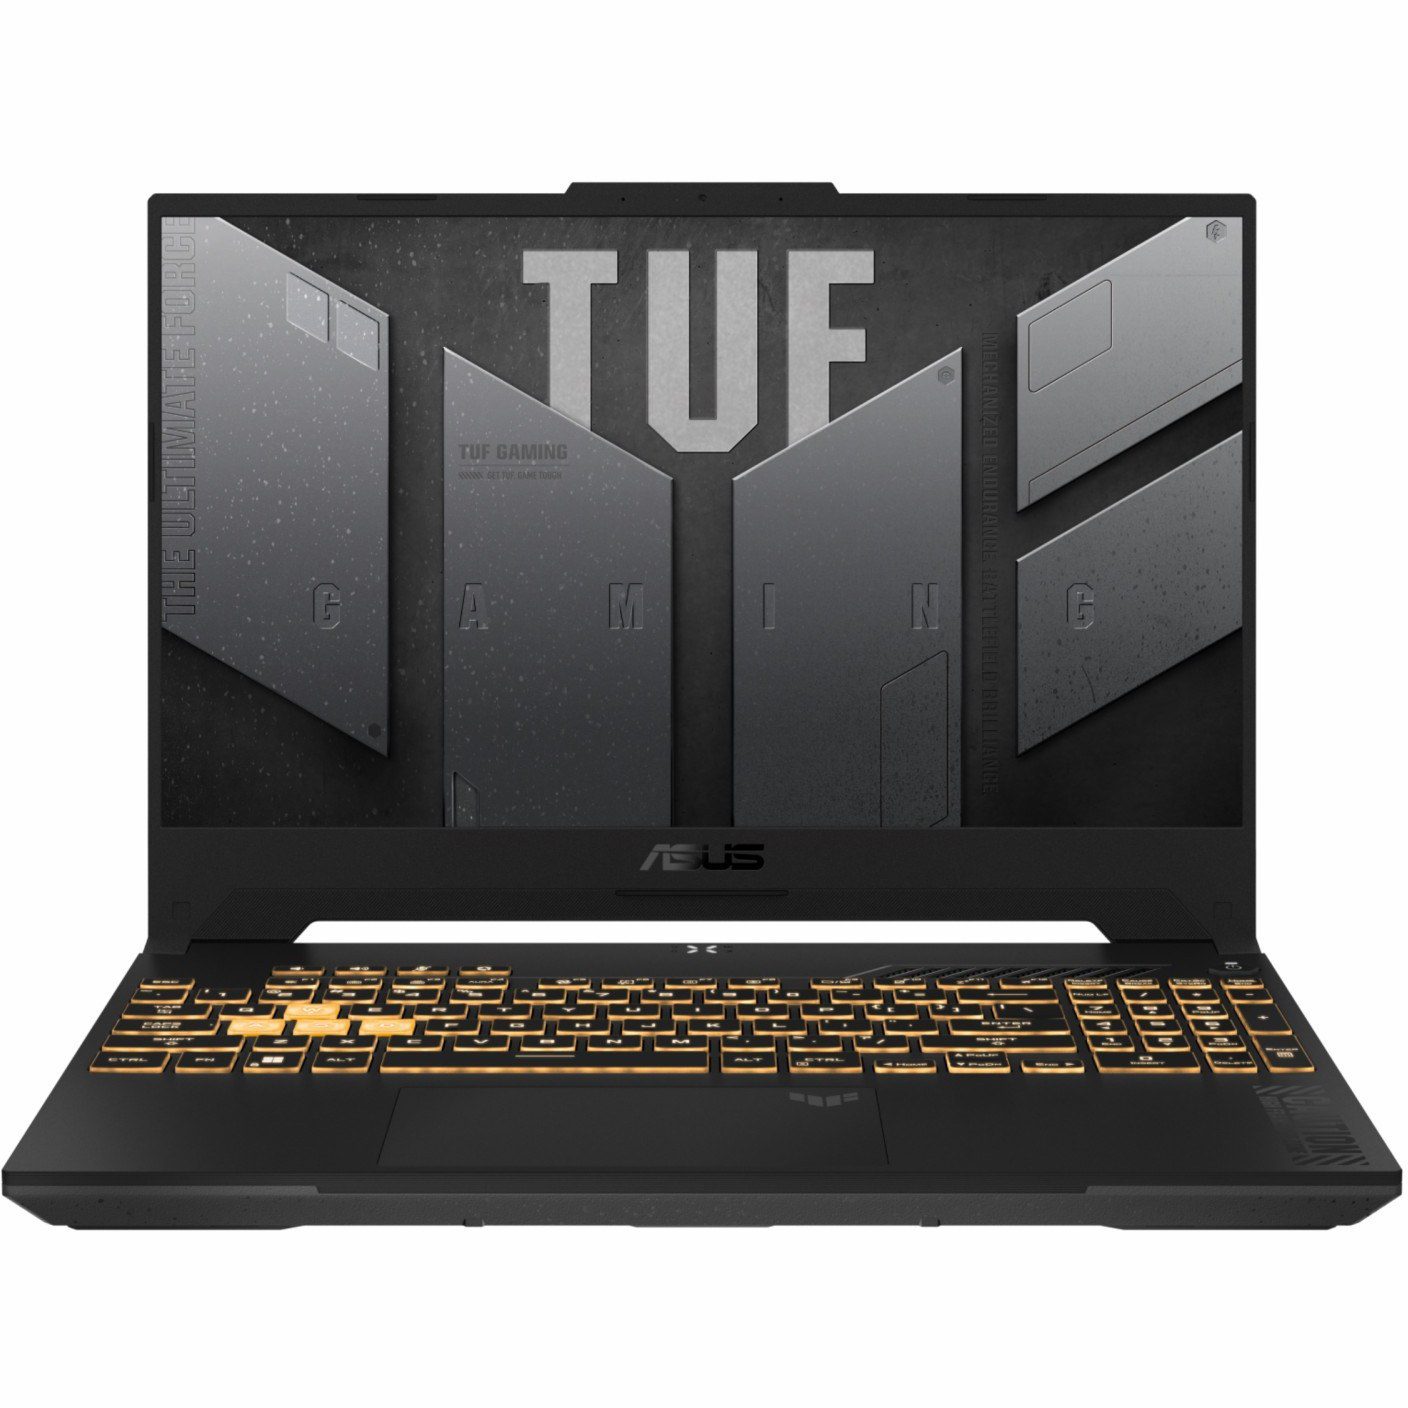 لپ تاپ ایسوس 17.3 اینچی مدل TUF Gaming F17 FX707VV4 پردازنده Core i7 13900H ,گرافیک 4060 حافظه 1TB